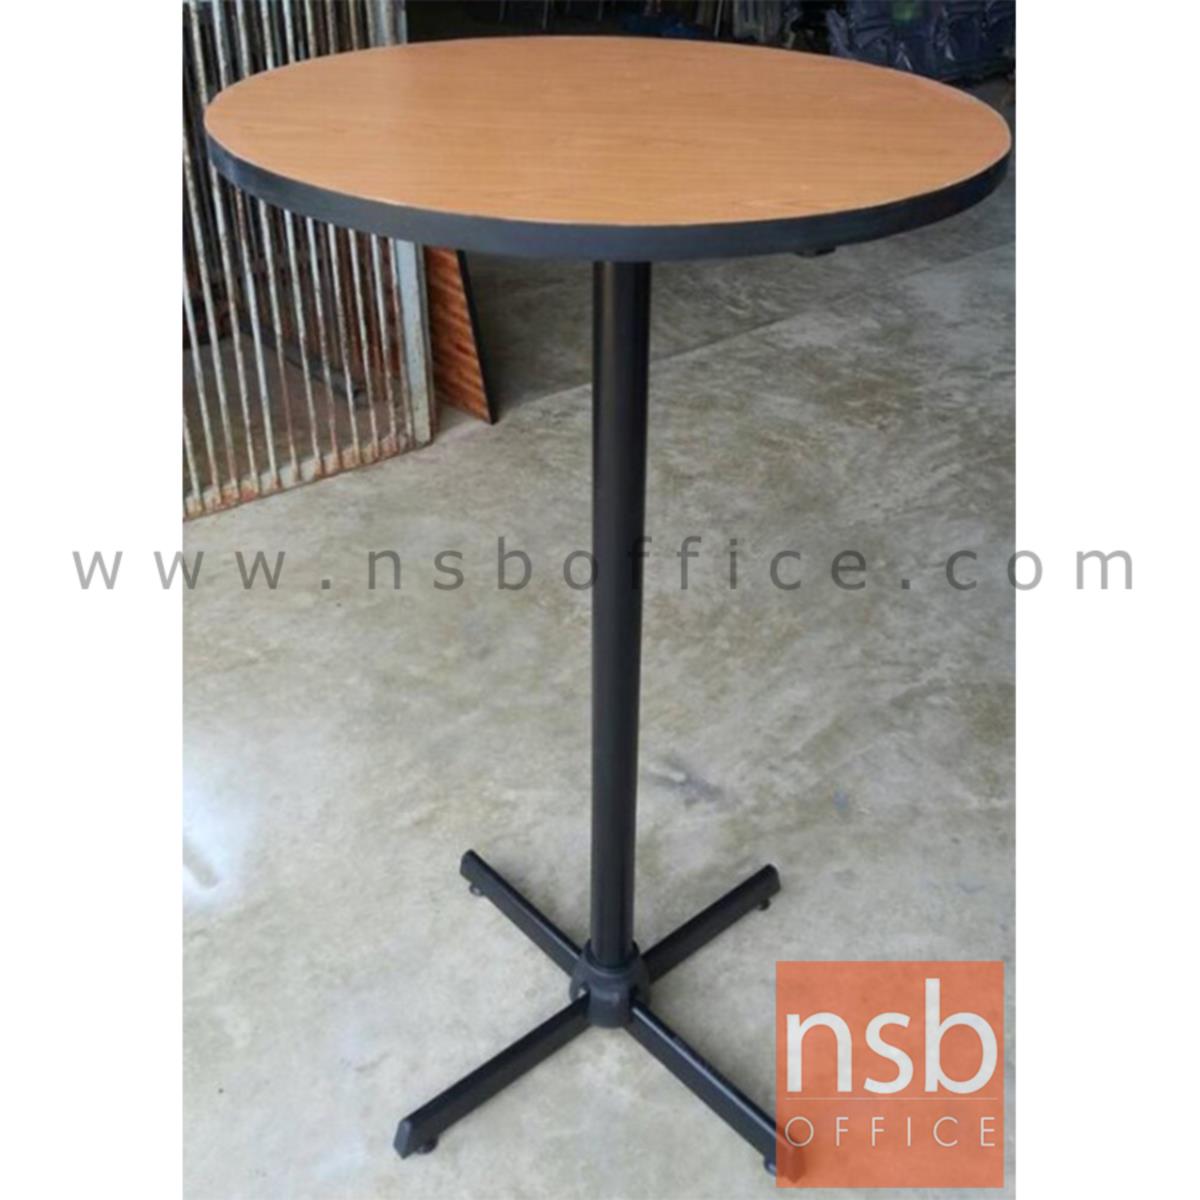 โต๊ะหน้าไม้ รุุ่น SCHLESWIG (ชเลสวิก) ขนาด 60Di cm. ขาเหล็ก